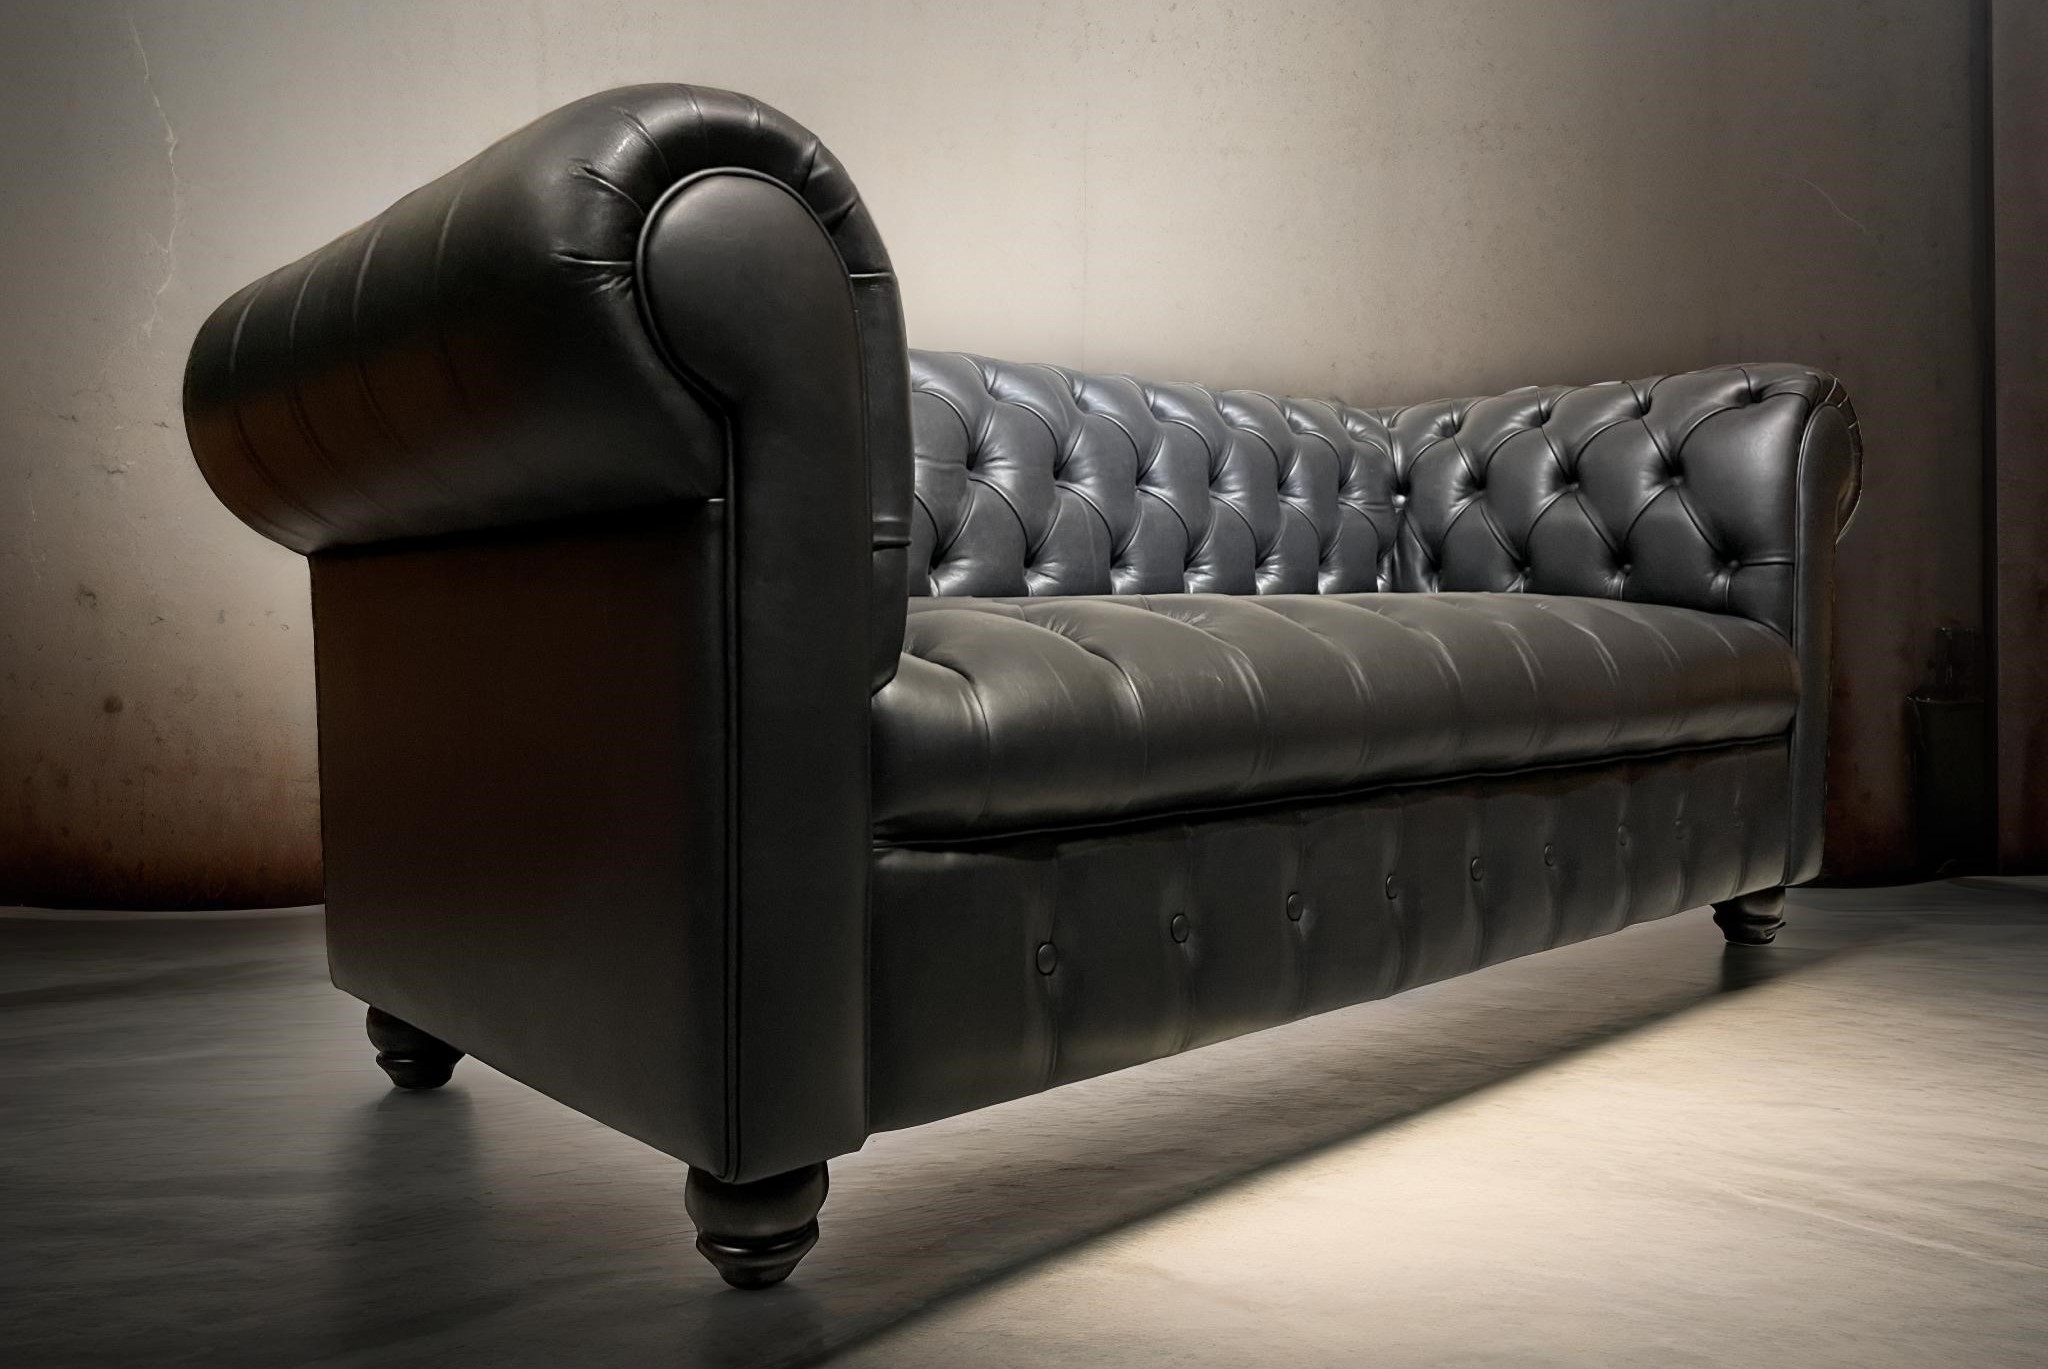 Sofa de Cuero – Chesterfield Color Fargo Negro, Capitoné Ingles, respaldo Recto Clásico, Cuero 100% Natural Uruguayo 4